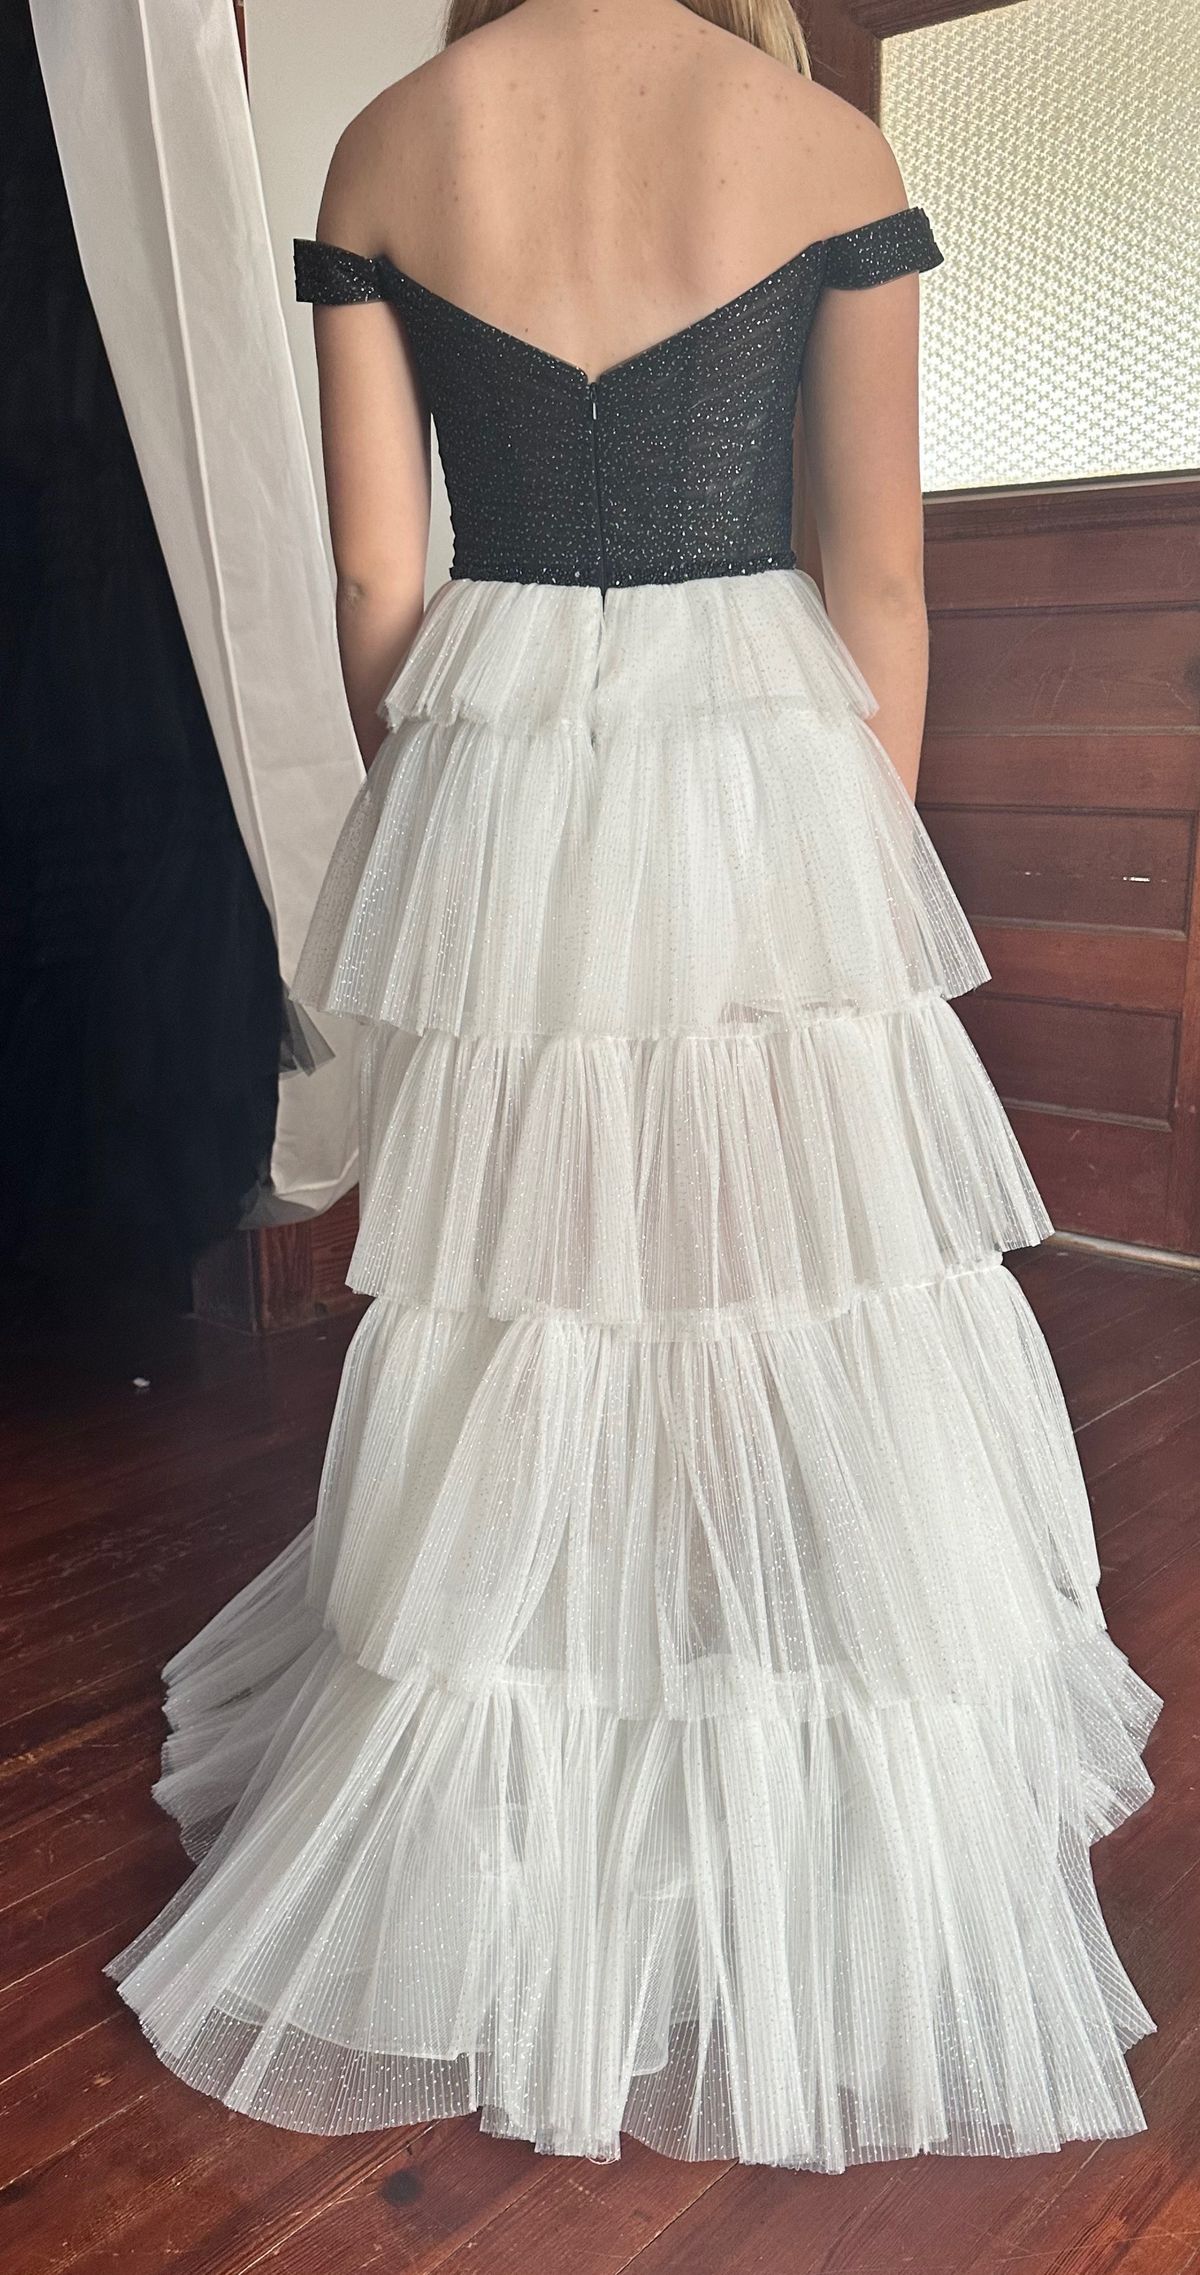 Ellie Wilde Size 2 Prom Off The Shoulder Black Side Slit Dress on Queenly